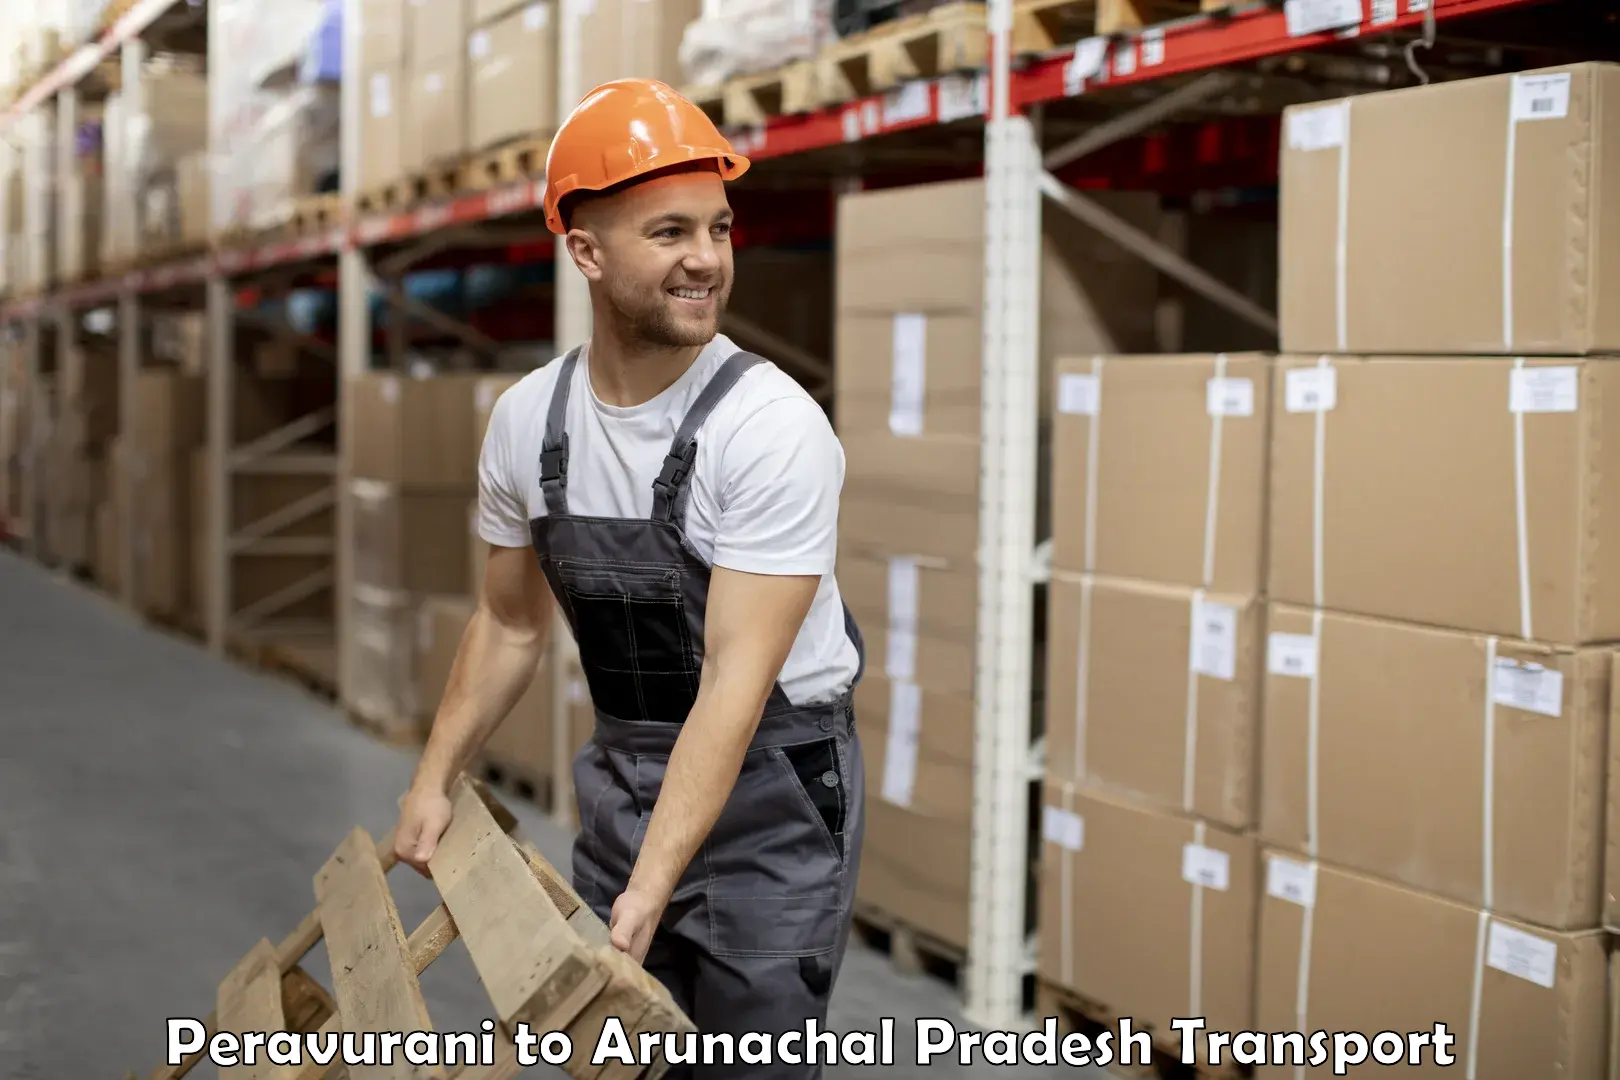 Furniture transport service Peravurani to Arunachal Pradesh